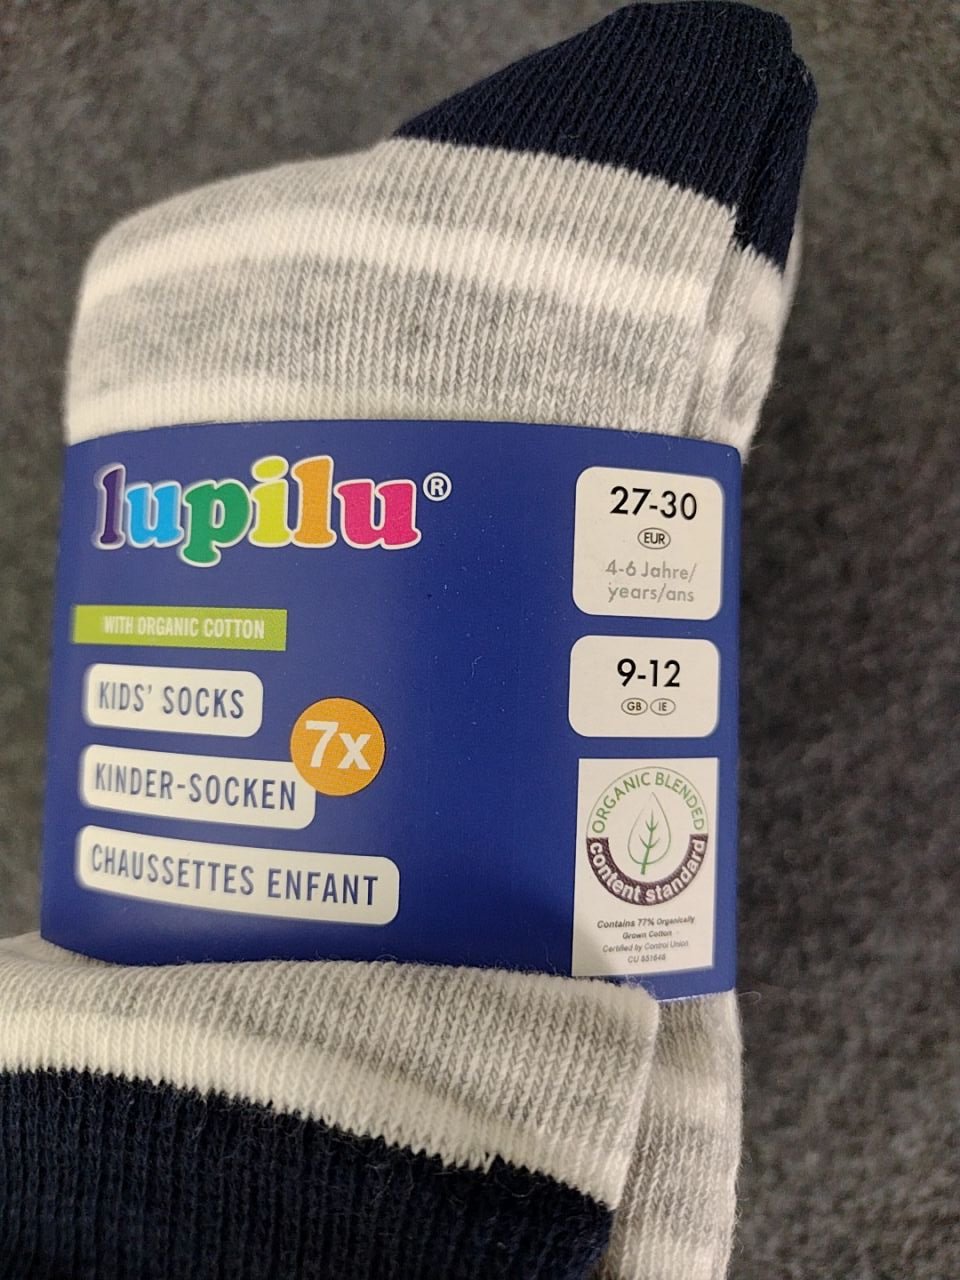 Dětské bavlněné ponožky Lupilu vel. 27-30, 7 párů